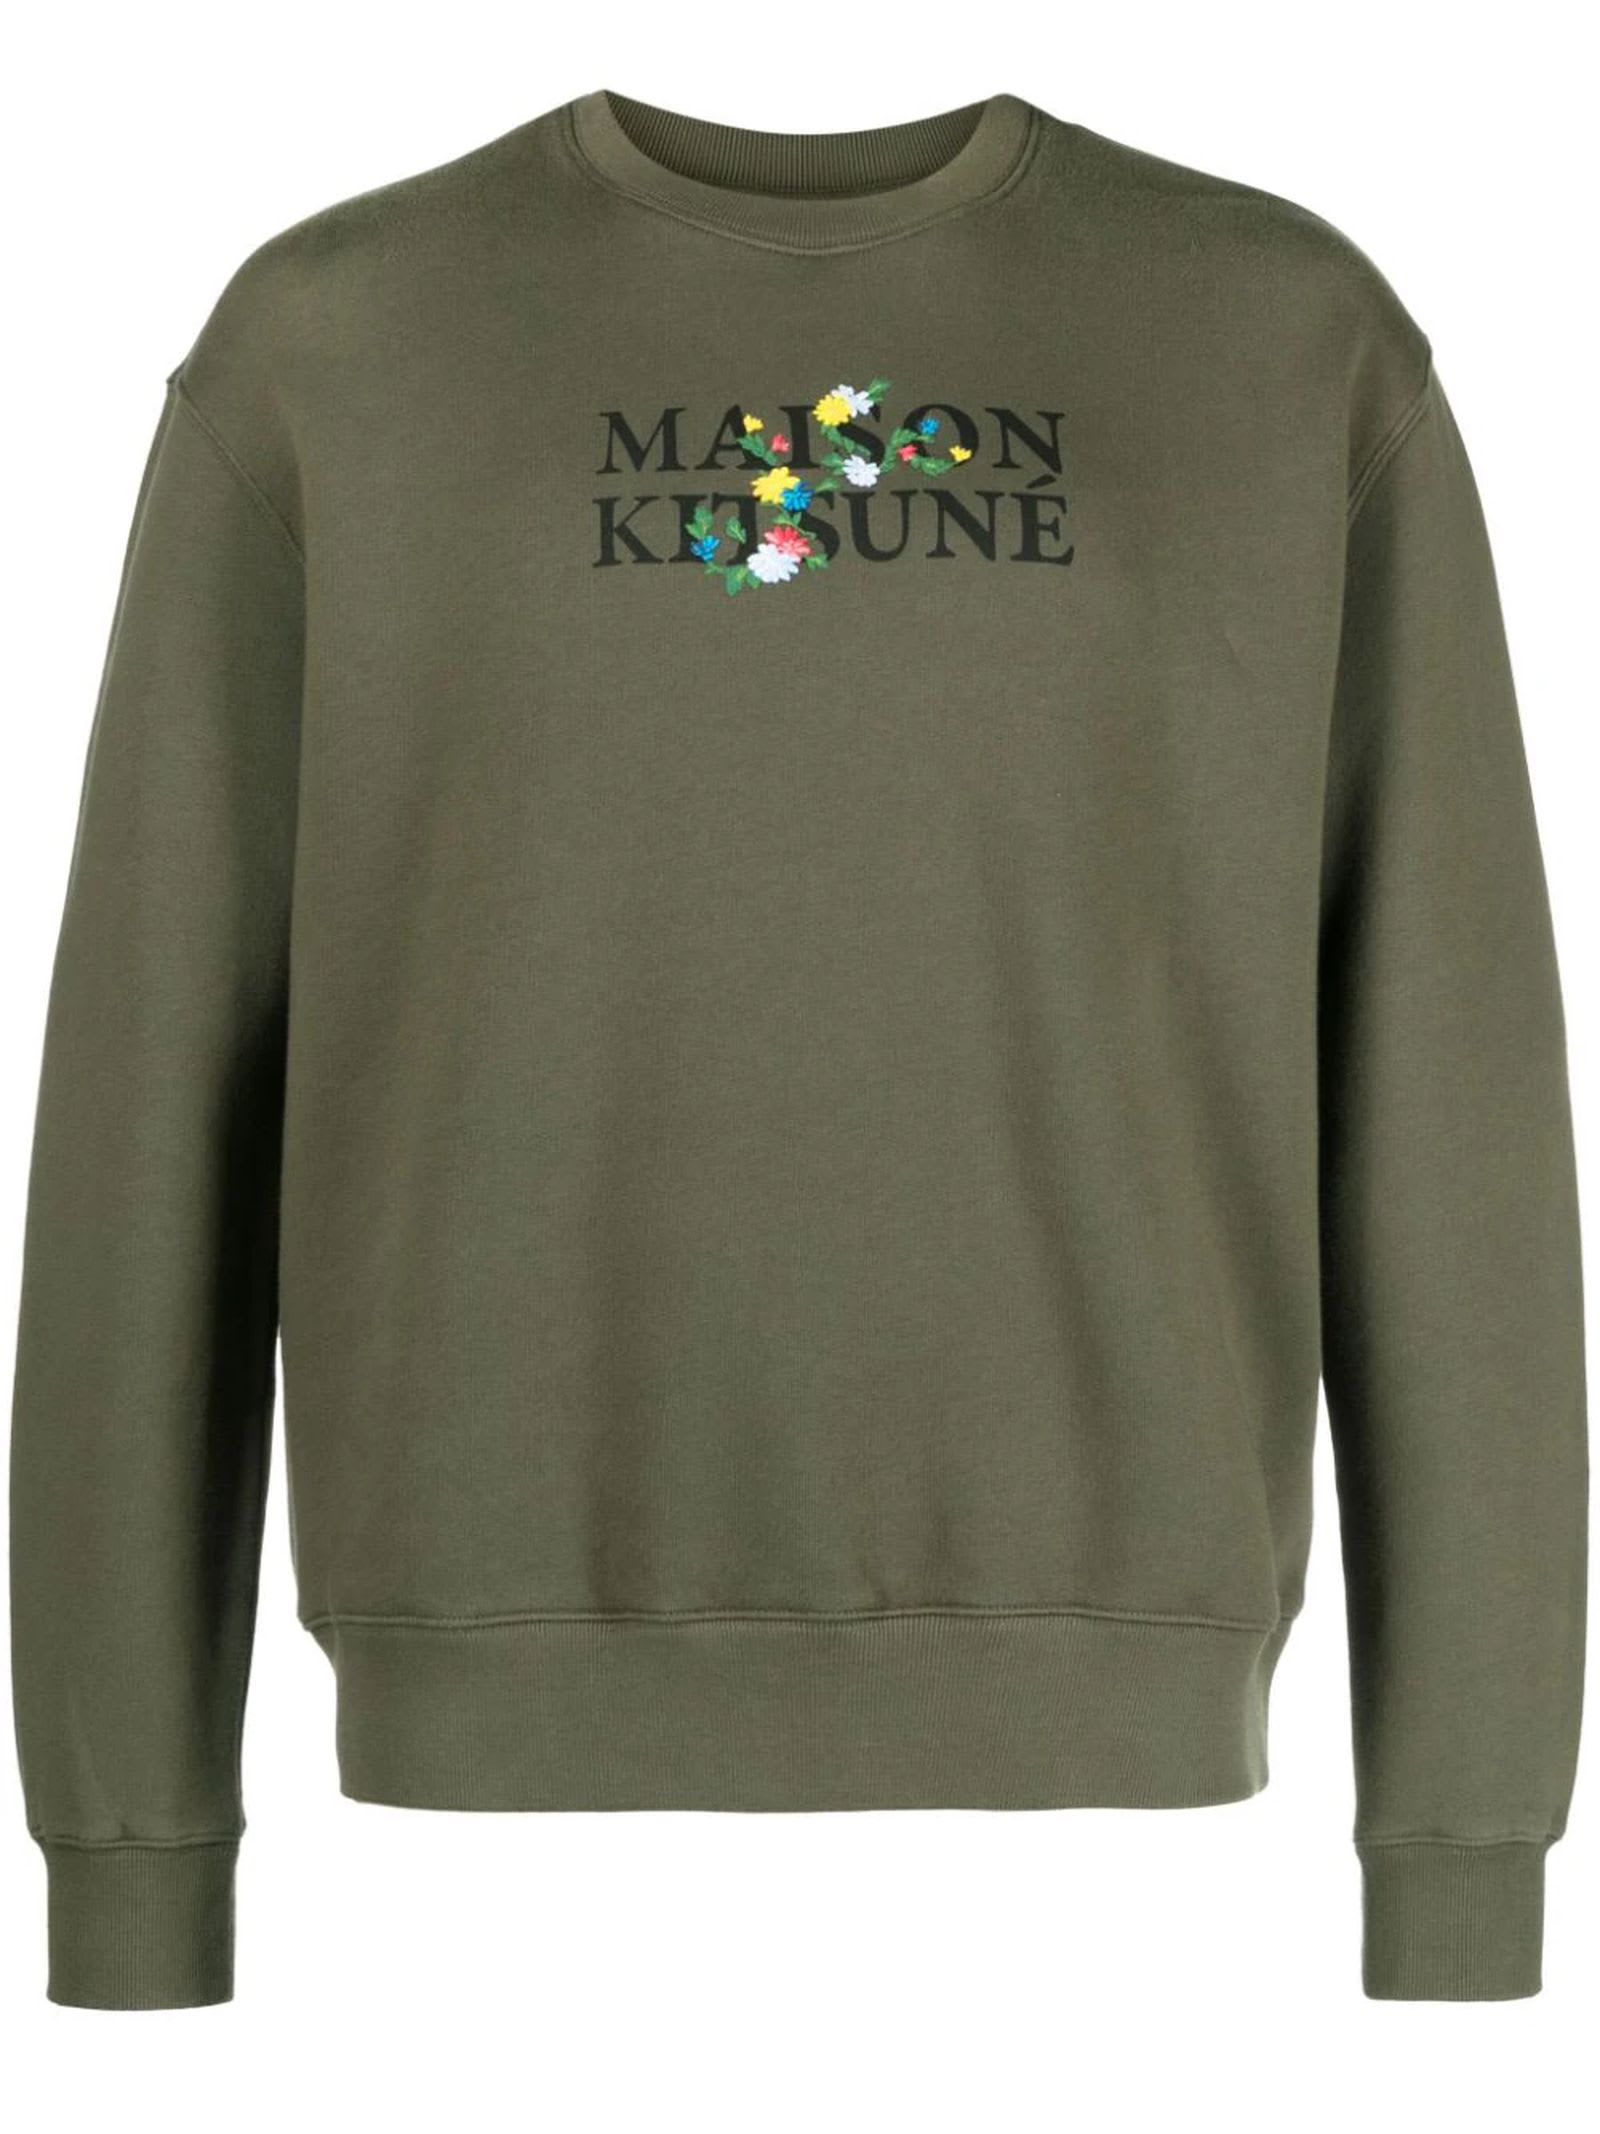 Shop Maison Kitsuné Olive Green Cotton Sweatshirt